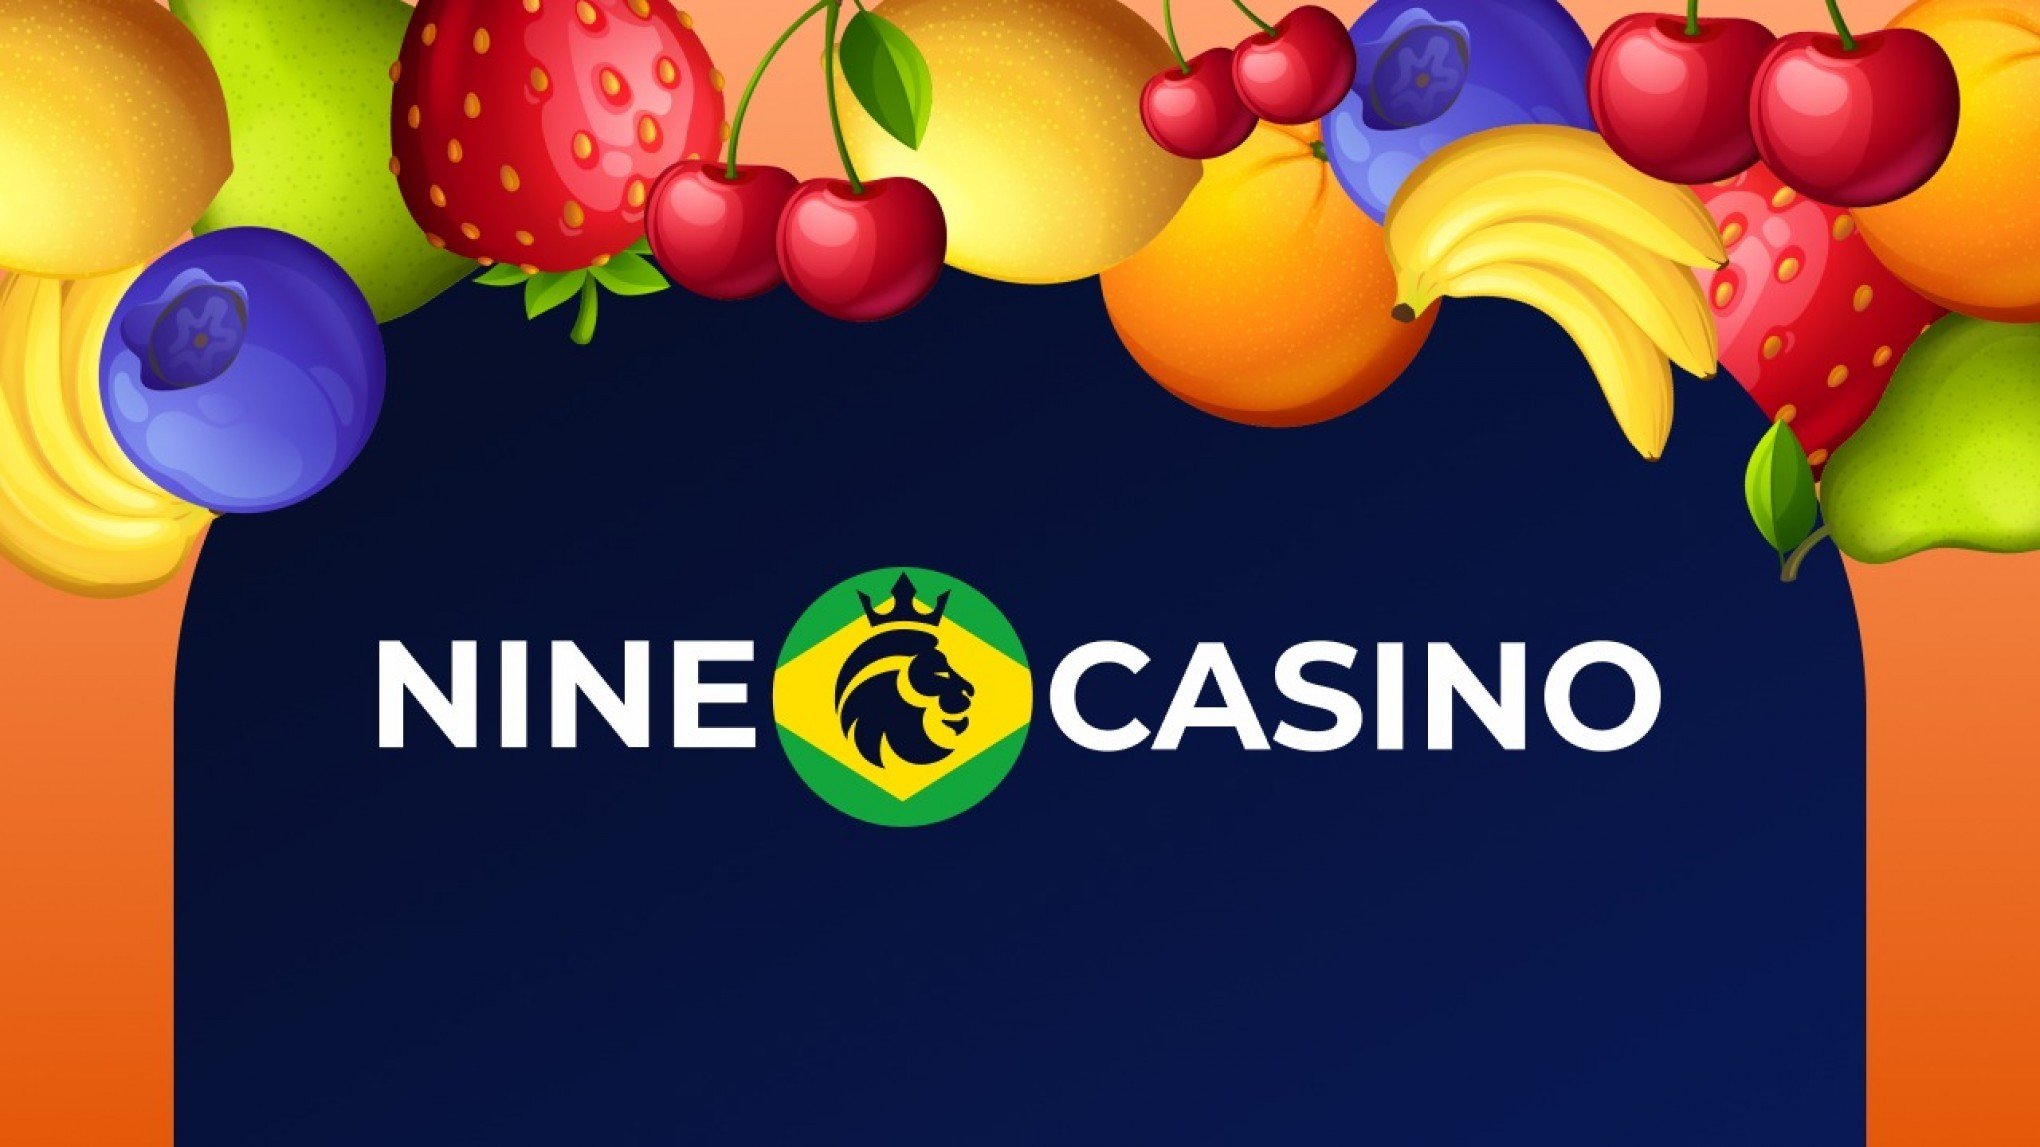 Nine casino Portugal online  Previsões para 2021